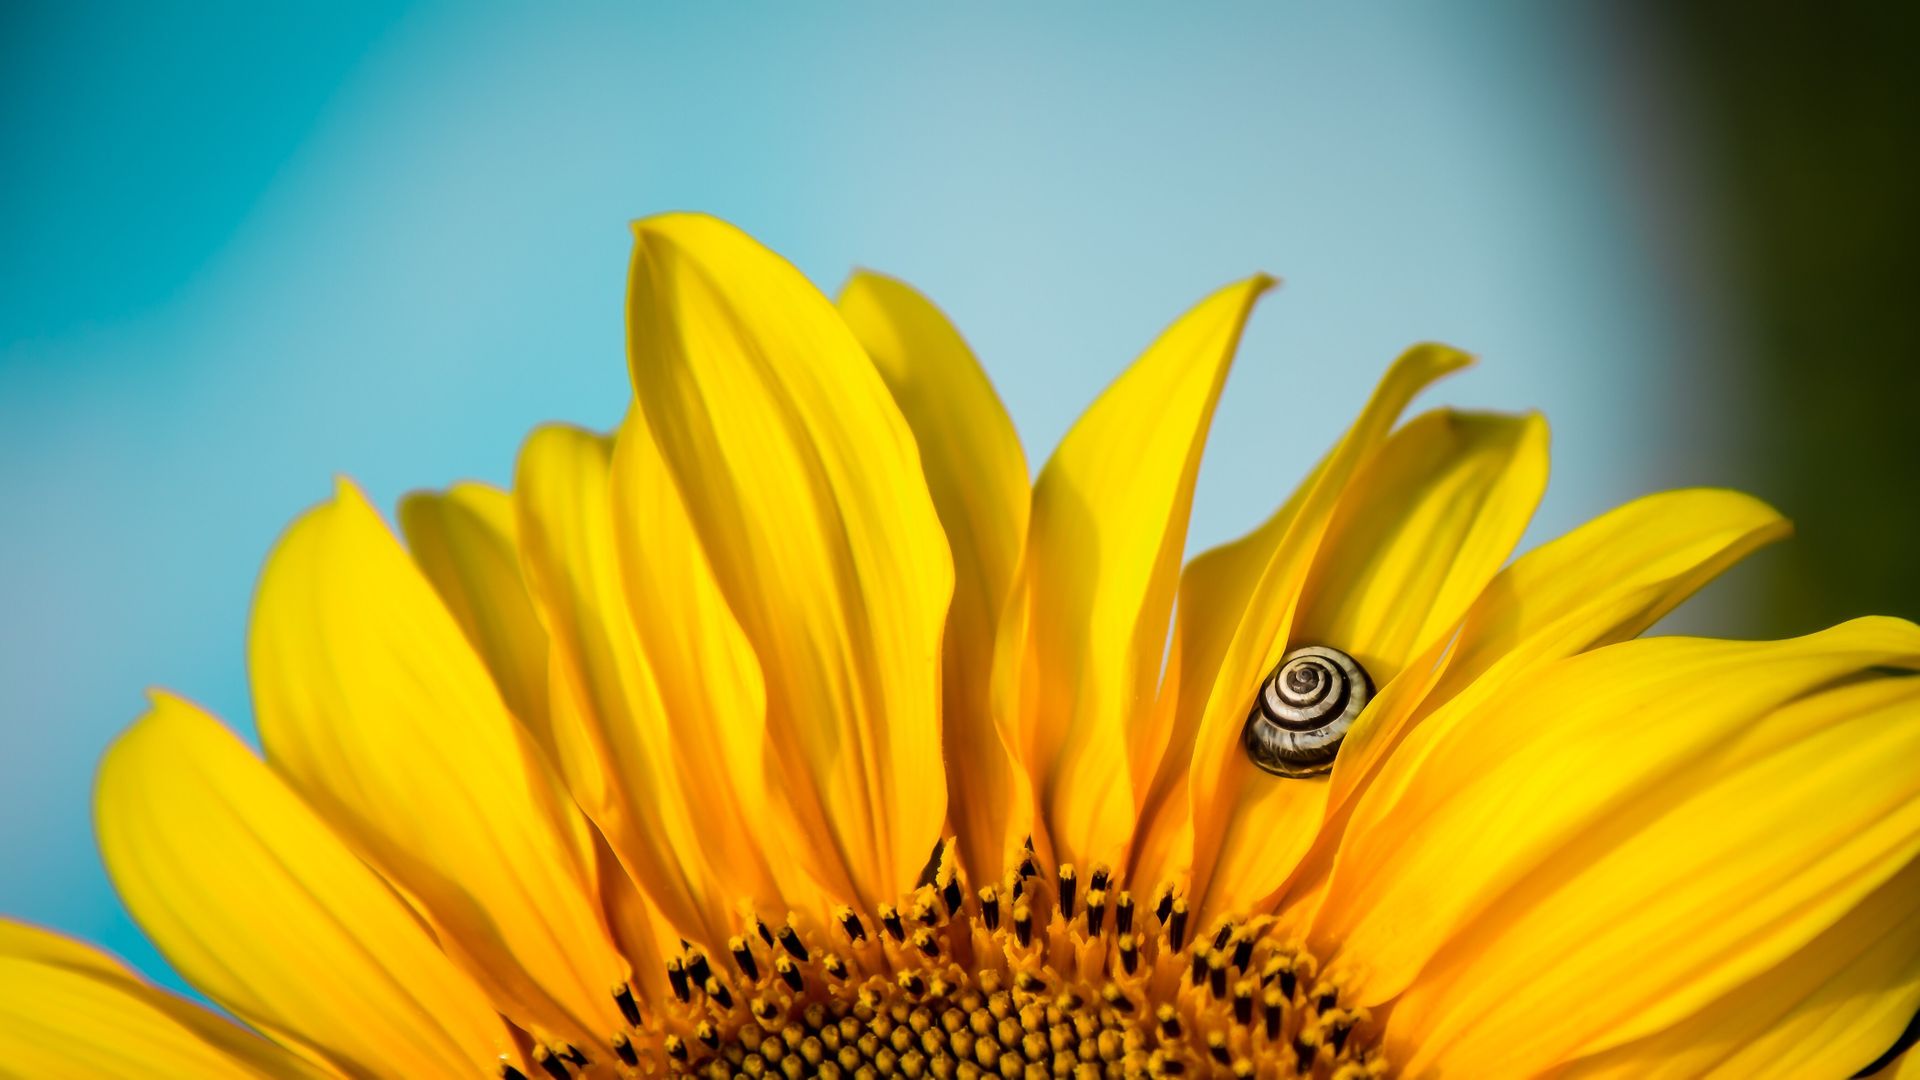 Yellow Sunflower Wallpaper - Sunflower - HD Wallpaper 